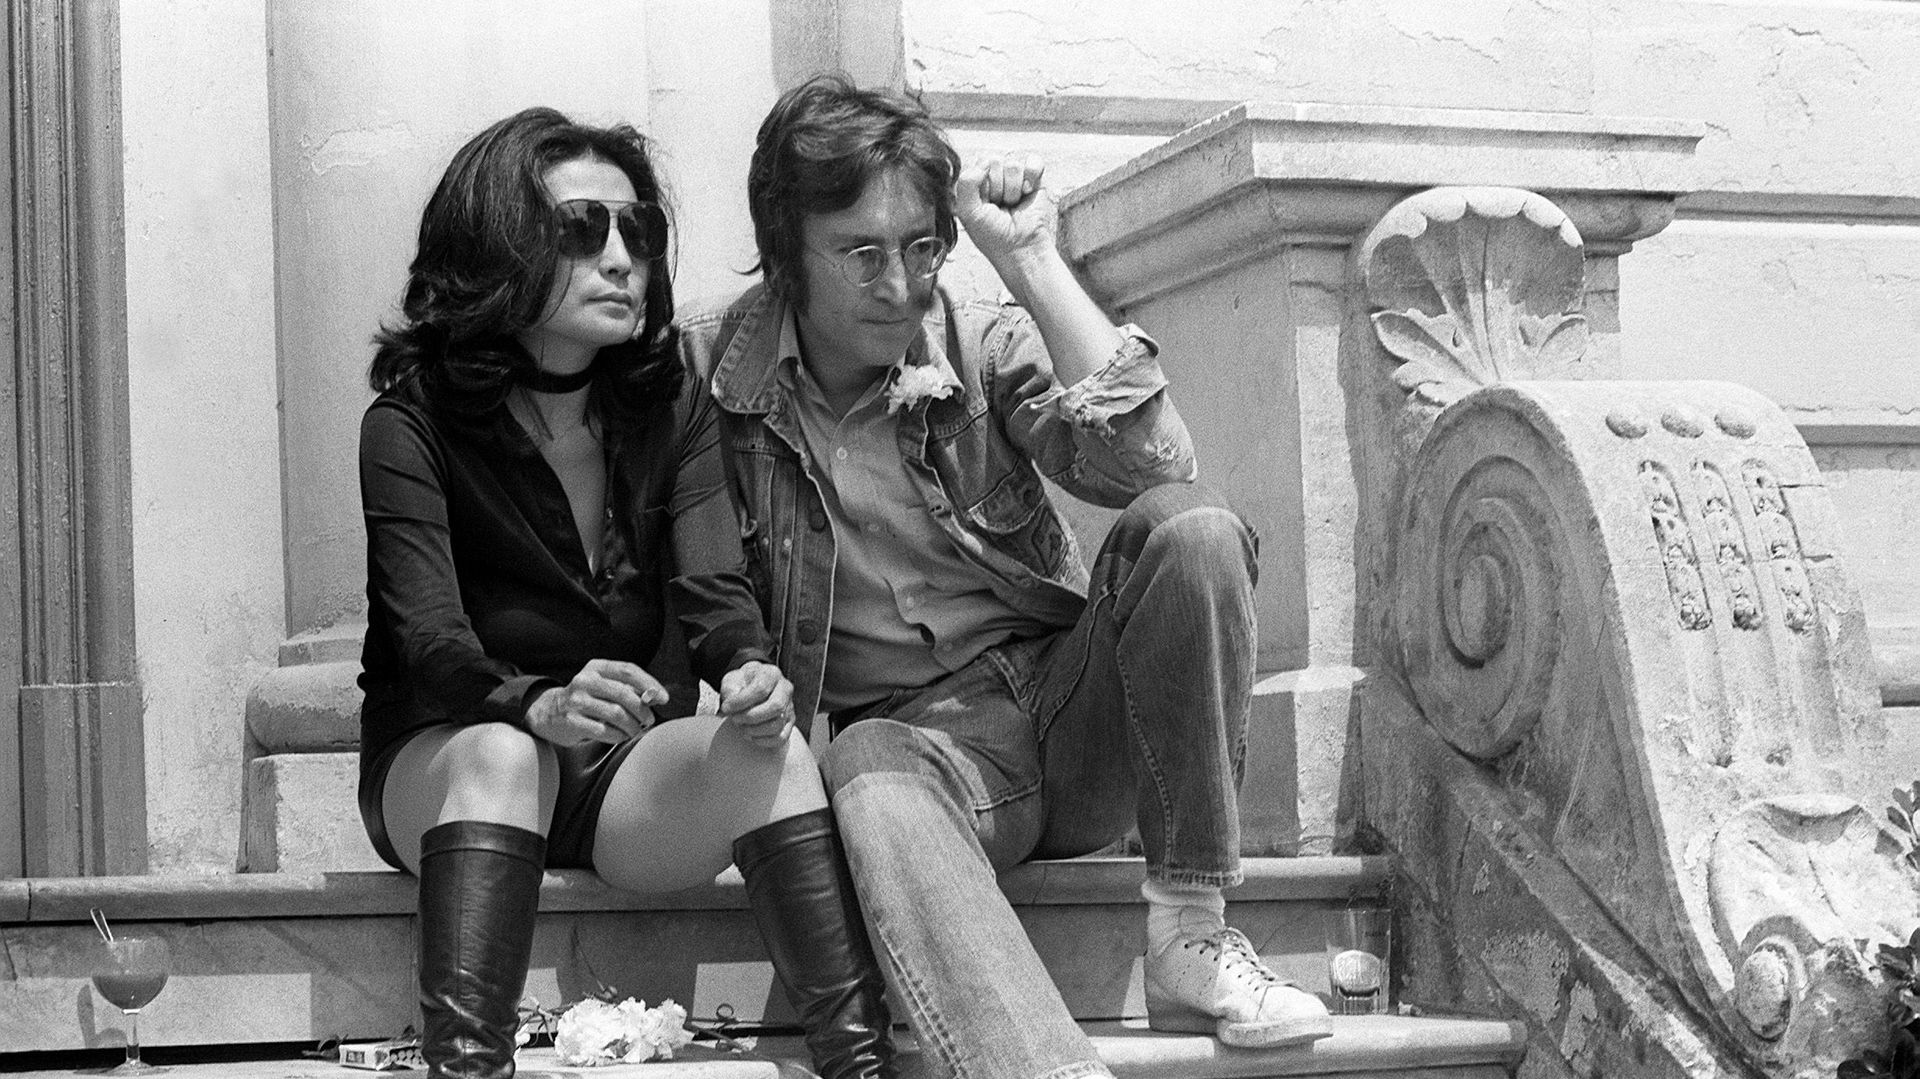 L'histoire d'amour de Yoko Ono et John Lennon portée à l'écran